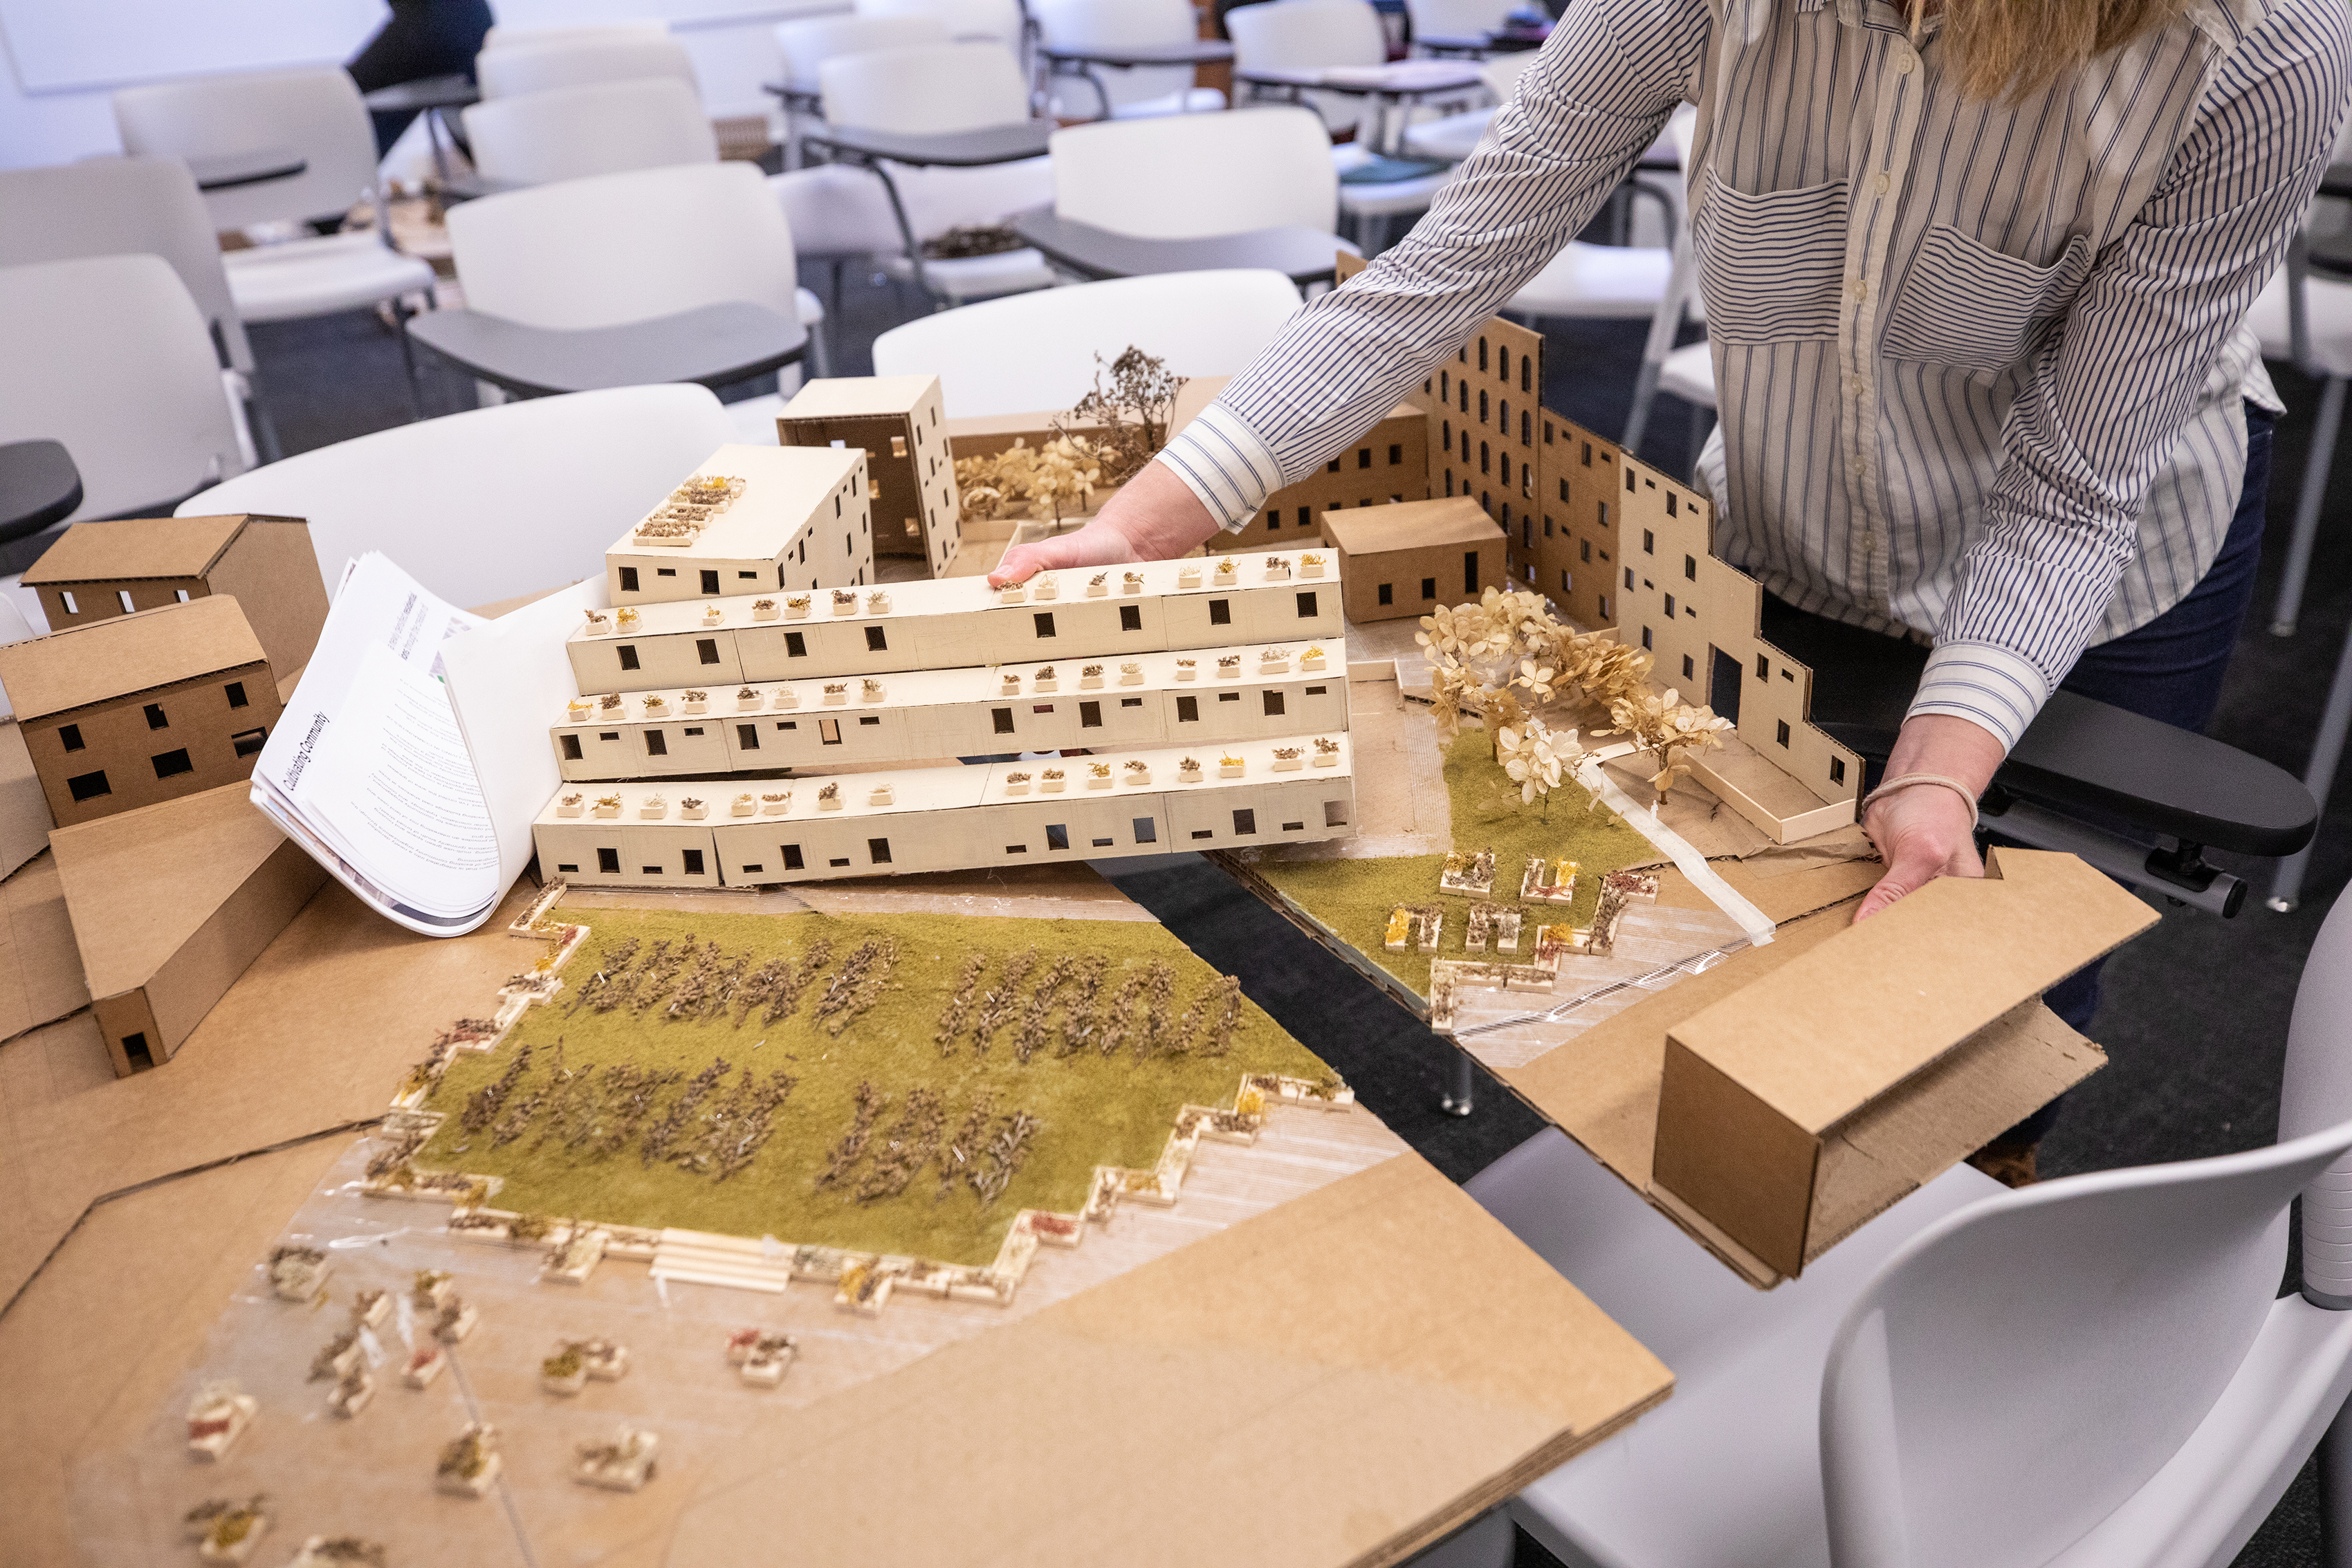 3D model by Landscape Architecture grad student